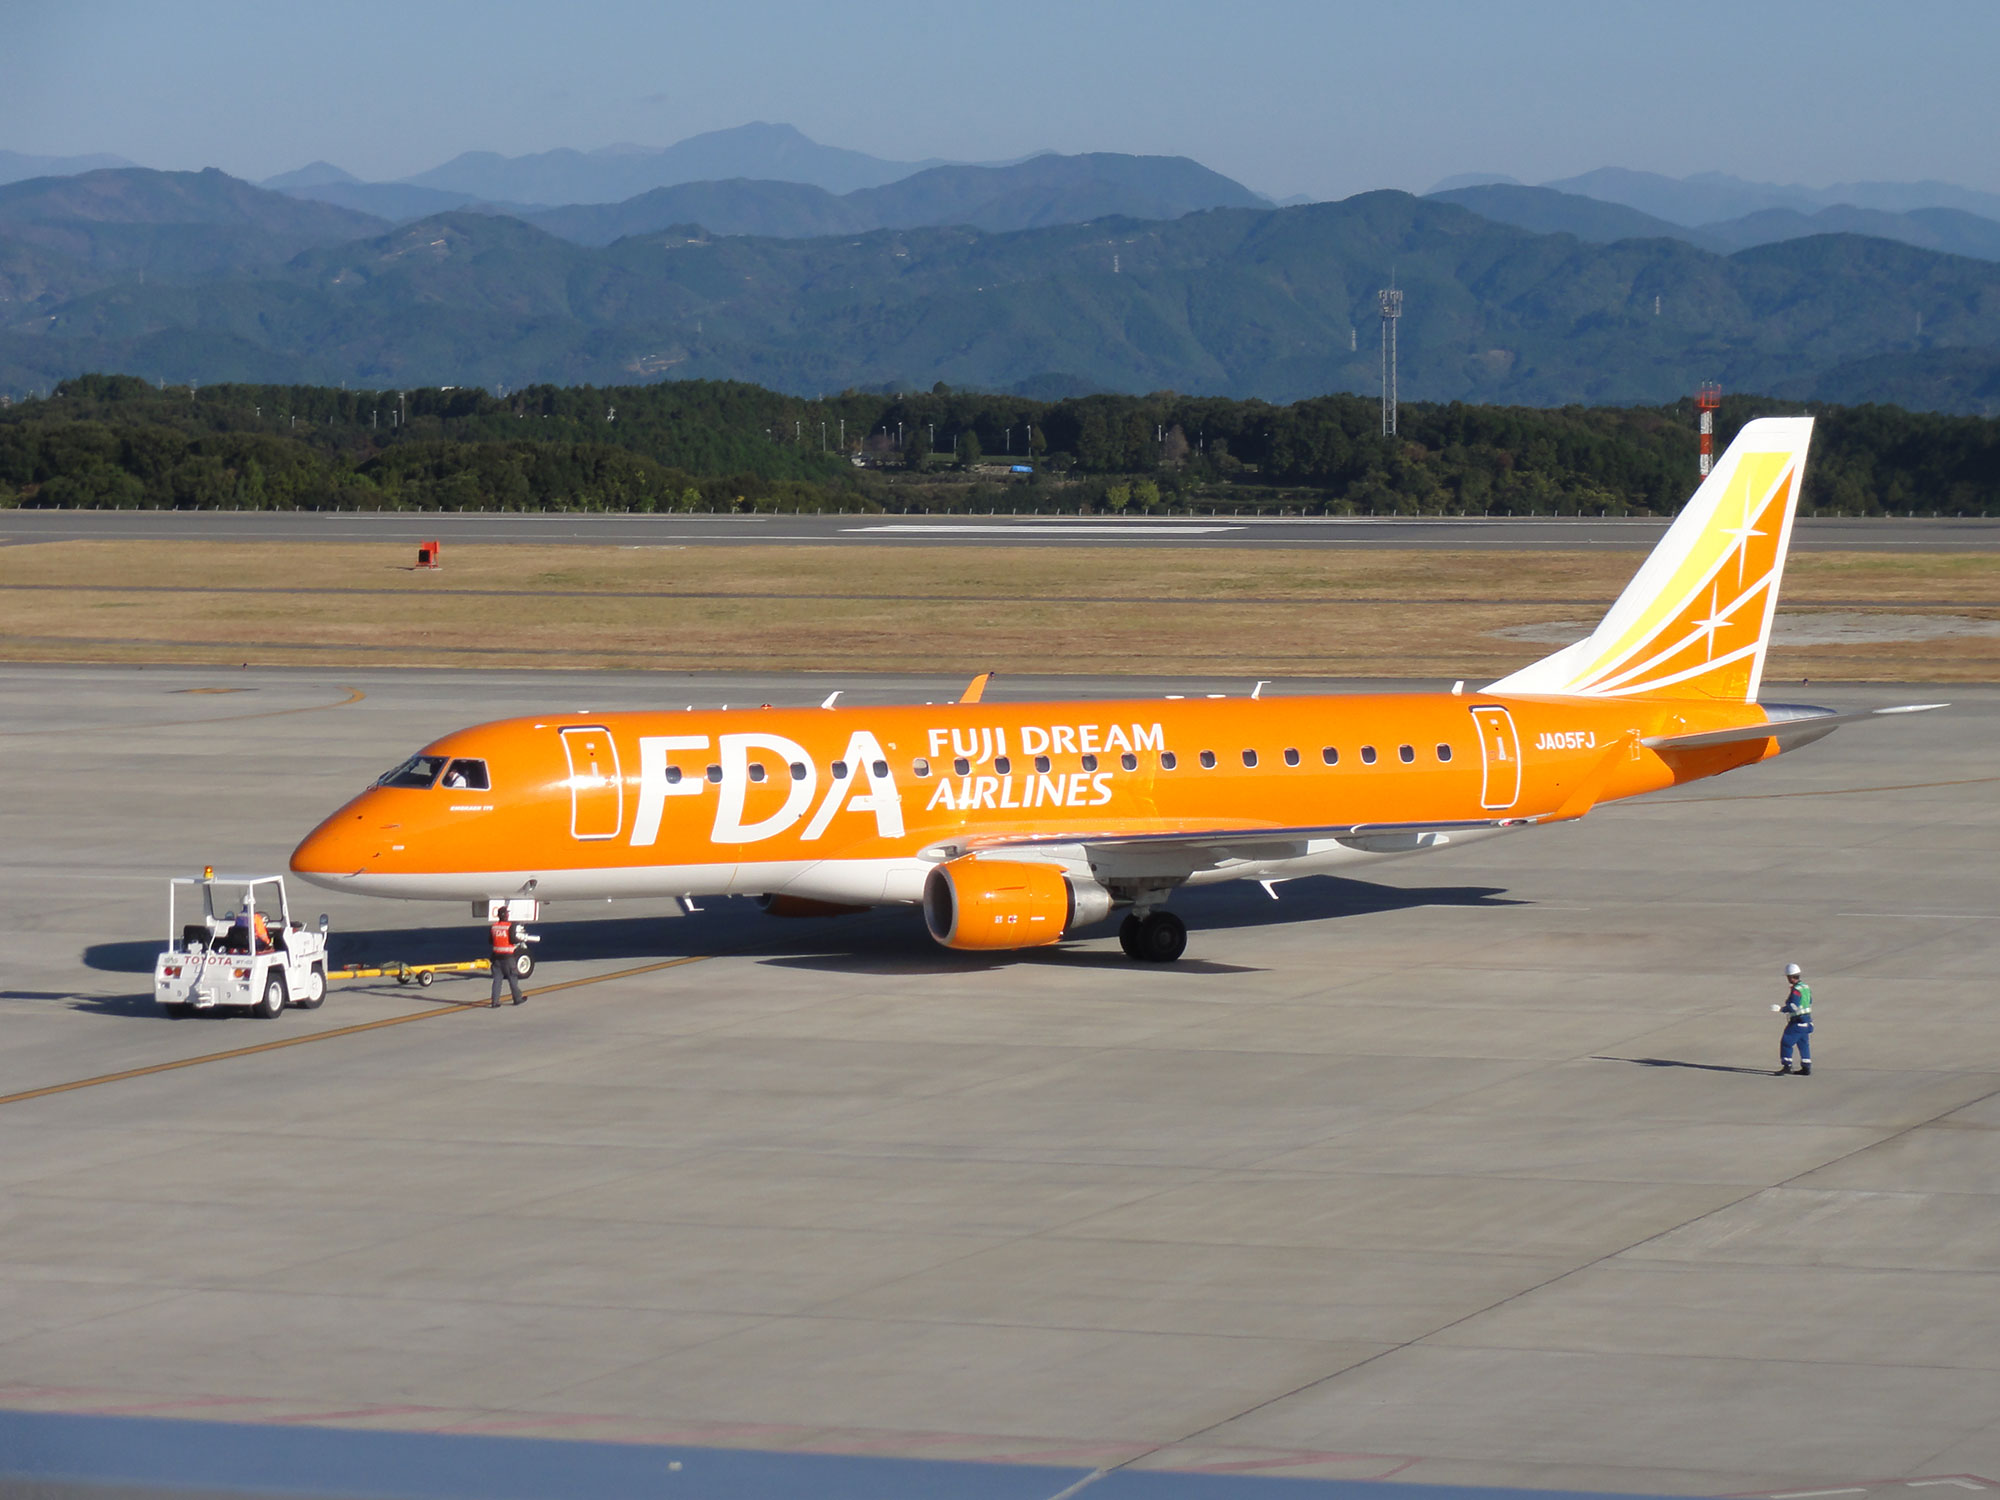 Fuji Dream Airlines